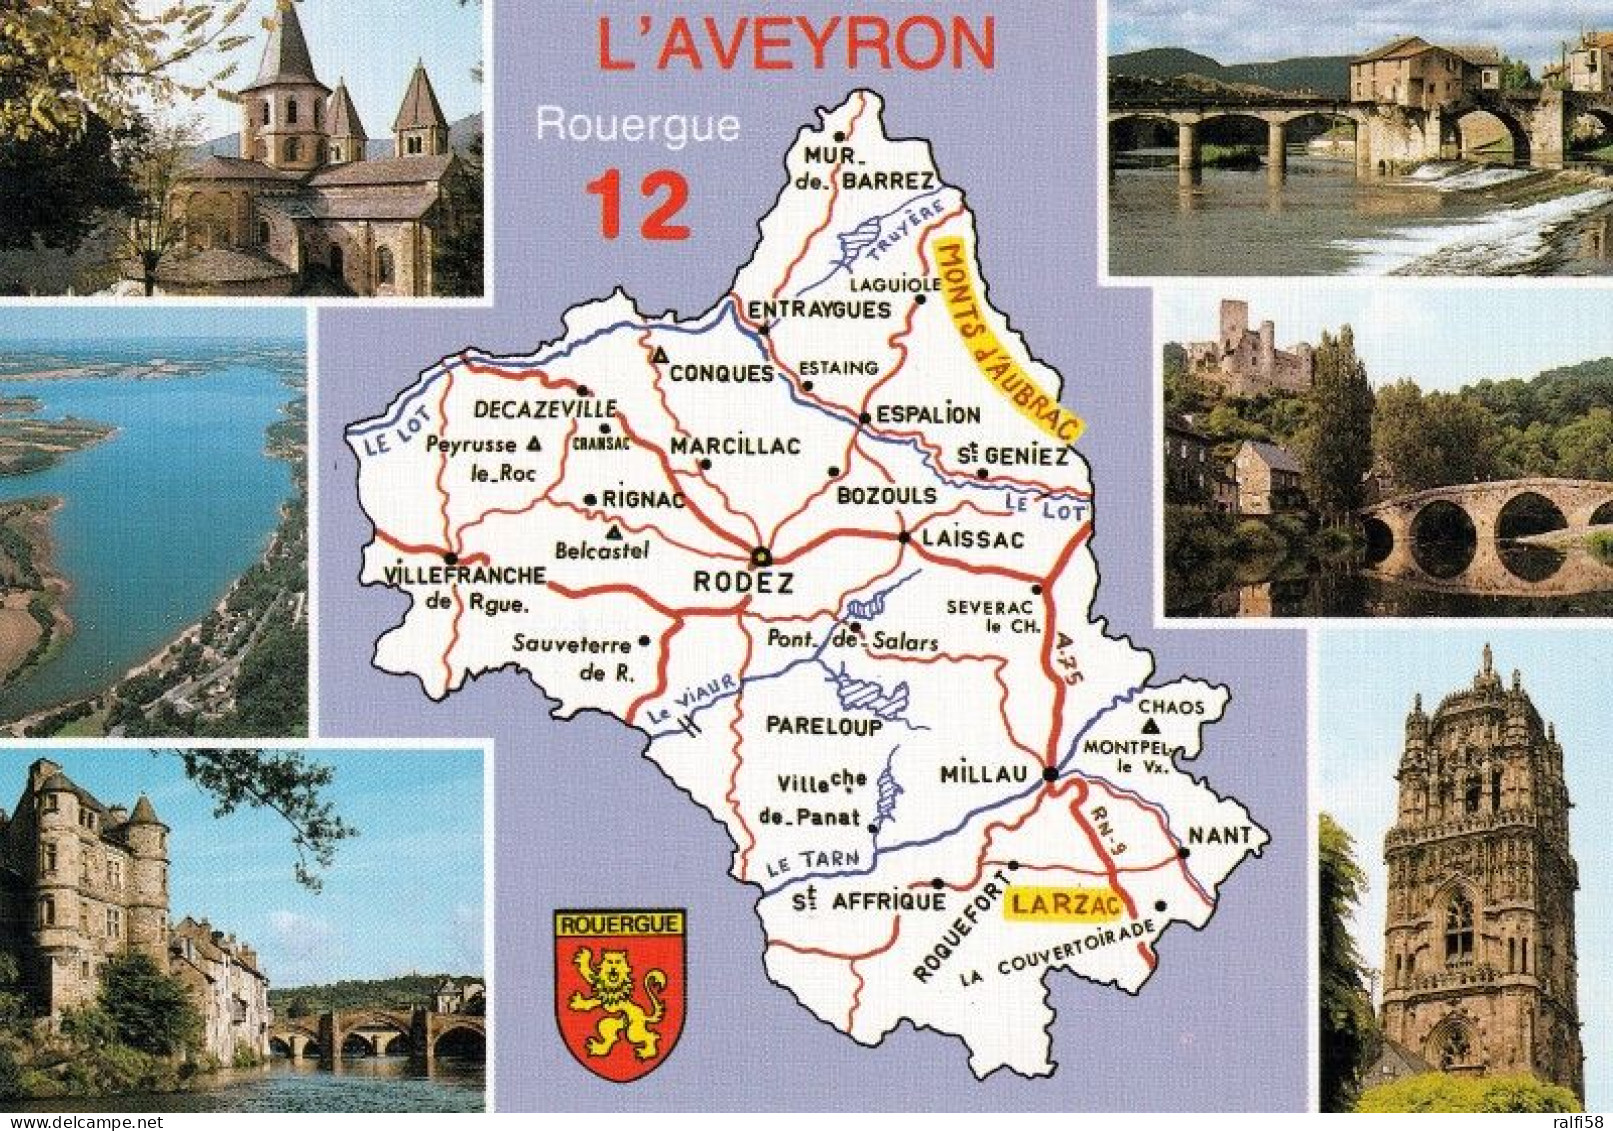 2 Map Of France * 2 Ansichtskarten Mit Der Landkarte - Département Aveyron Und Sehenswürdigkeiten - Ordnungsnummer 12 * - Cartes Géographiques